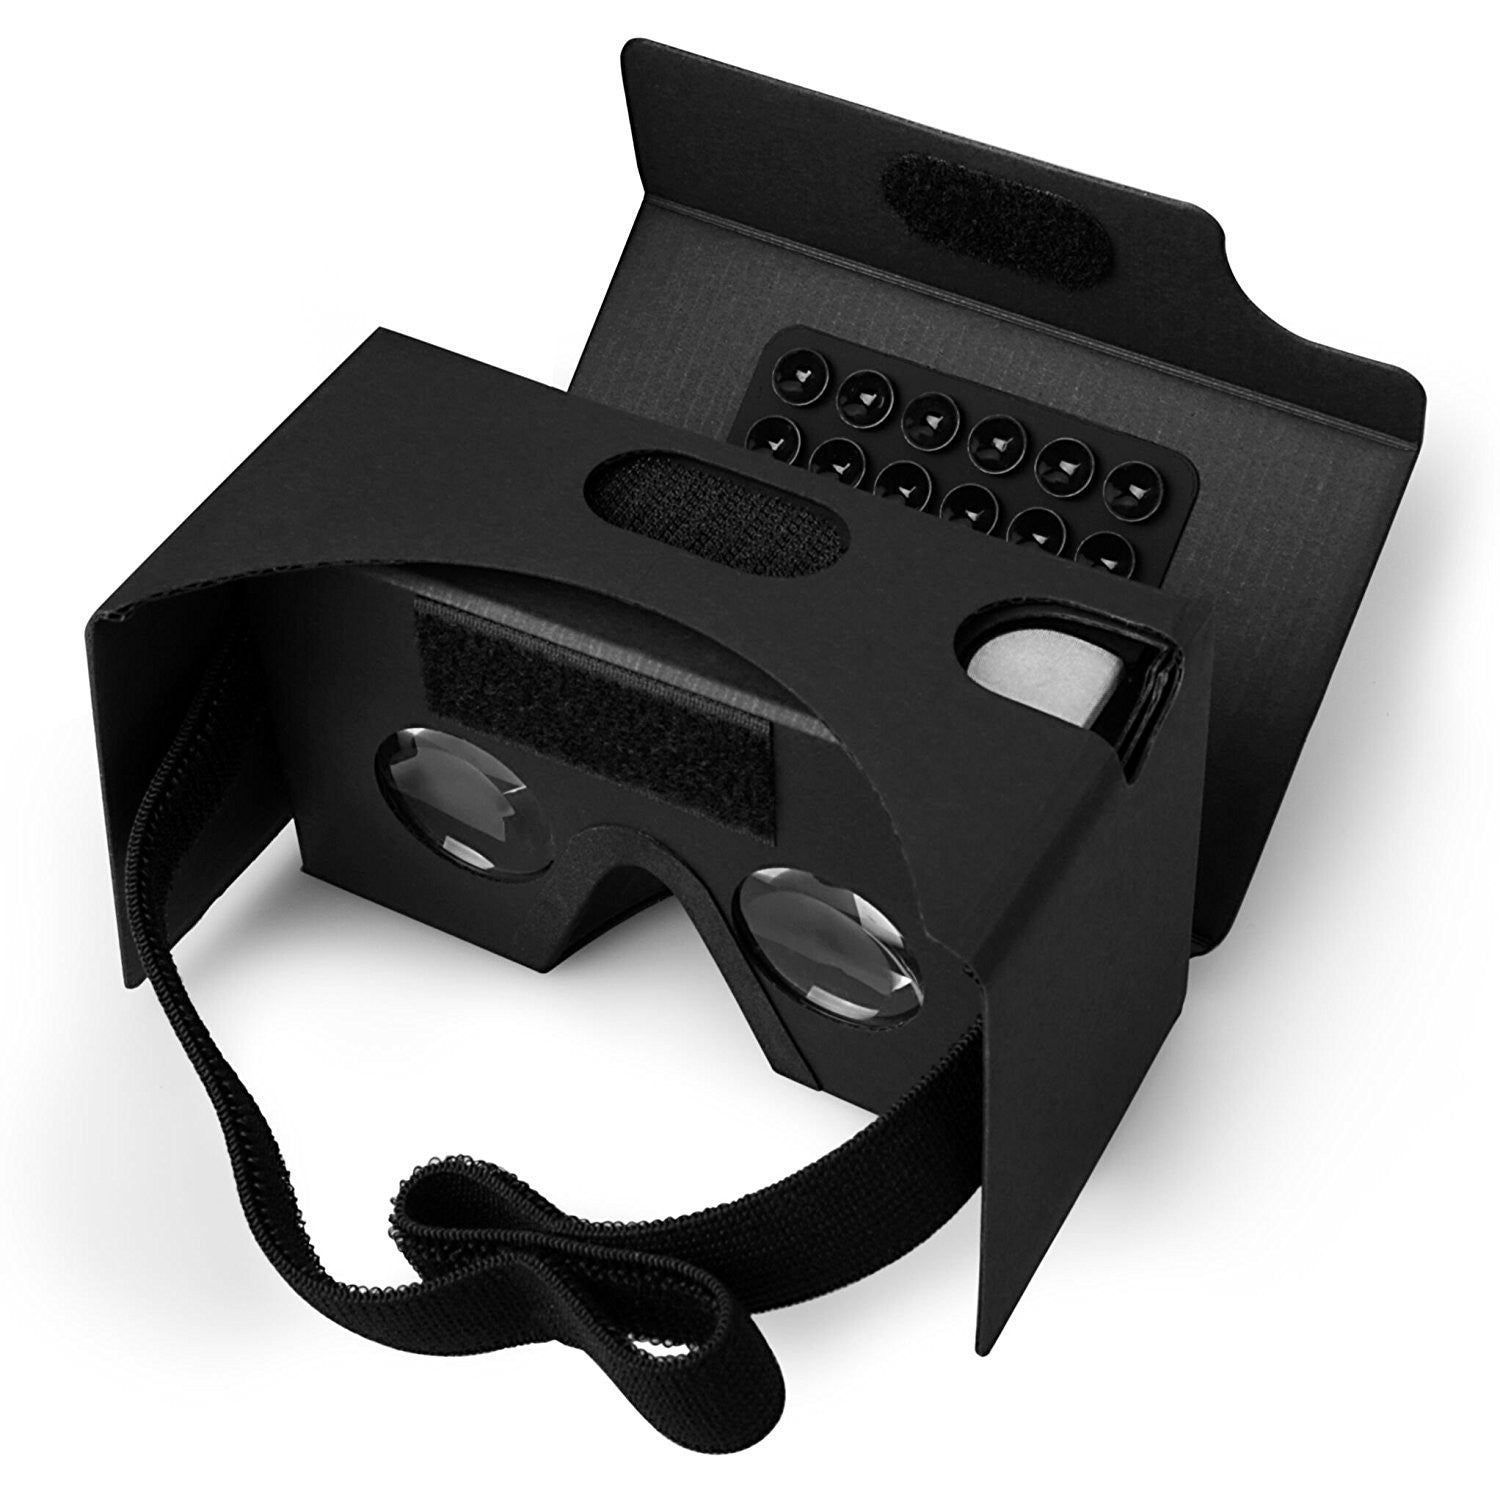 Д очки для телефона. ВР очки Кардборд. Google VR очки. 3 D очки Oculus Quest. Картонные очки виртуальной реальности.